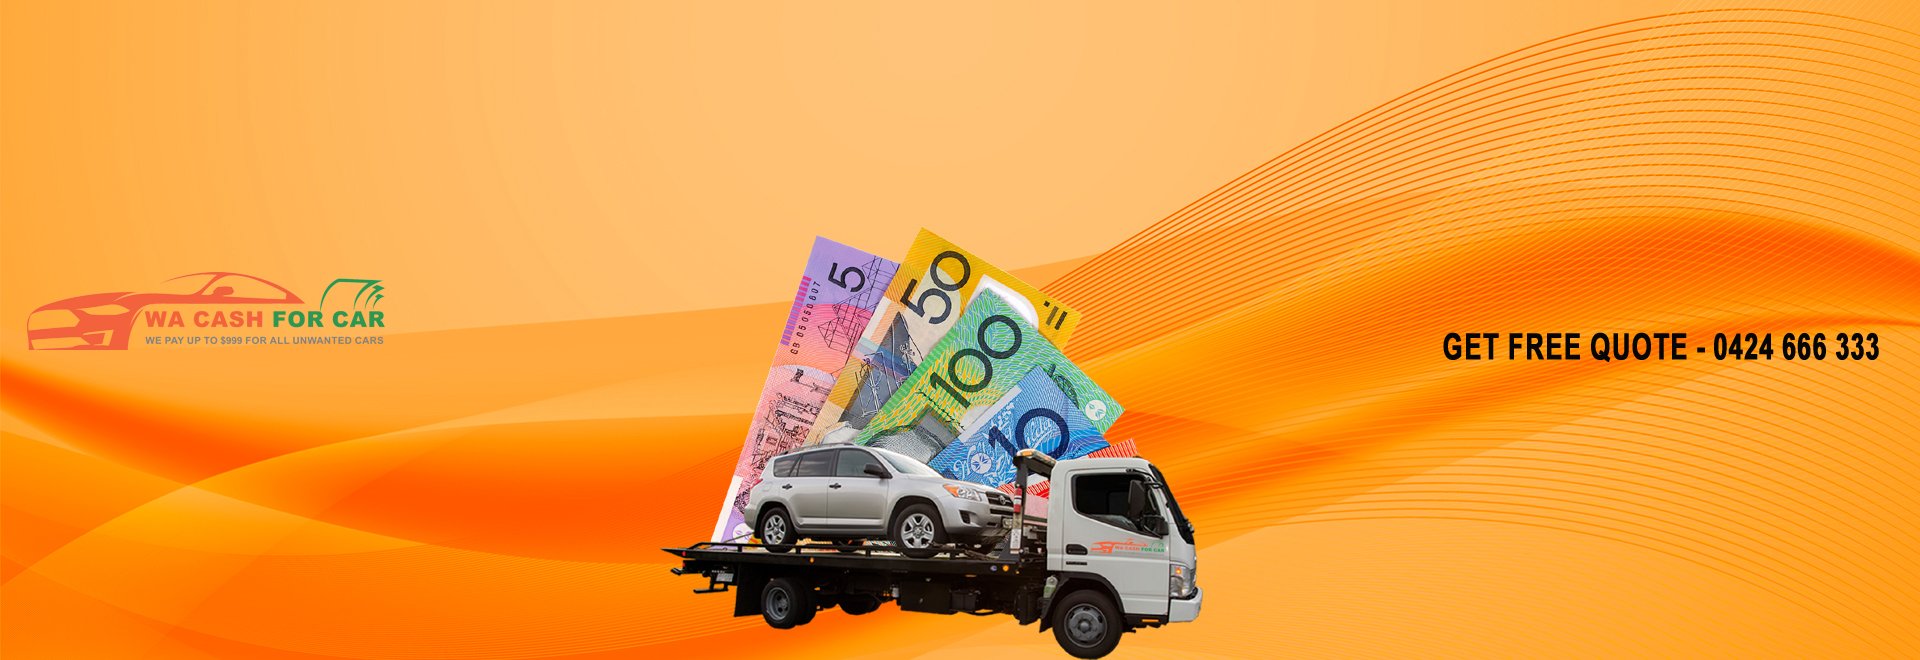 WA Cash For Car Perth cover